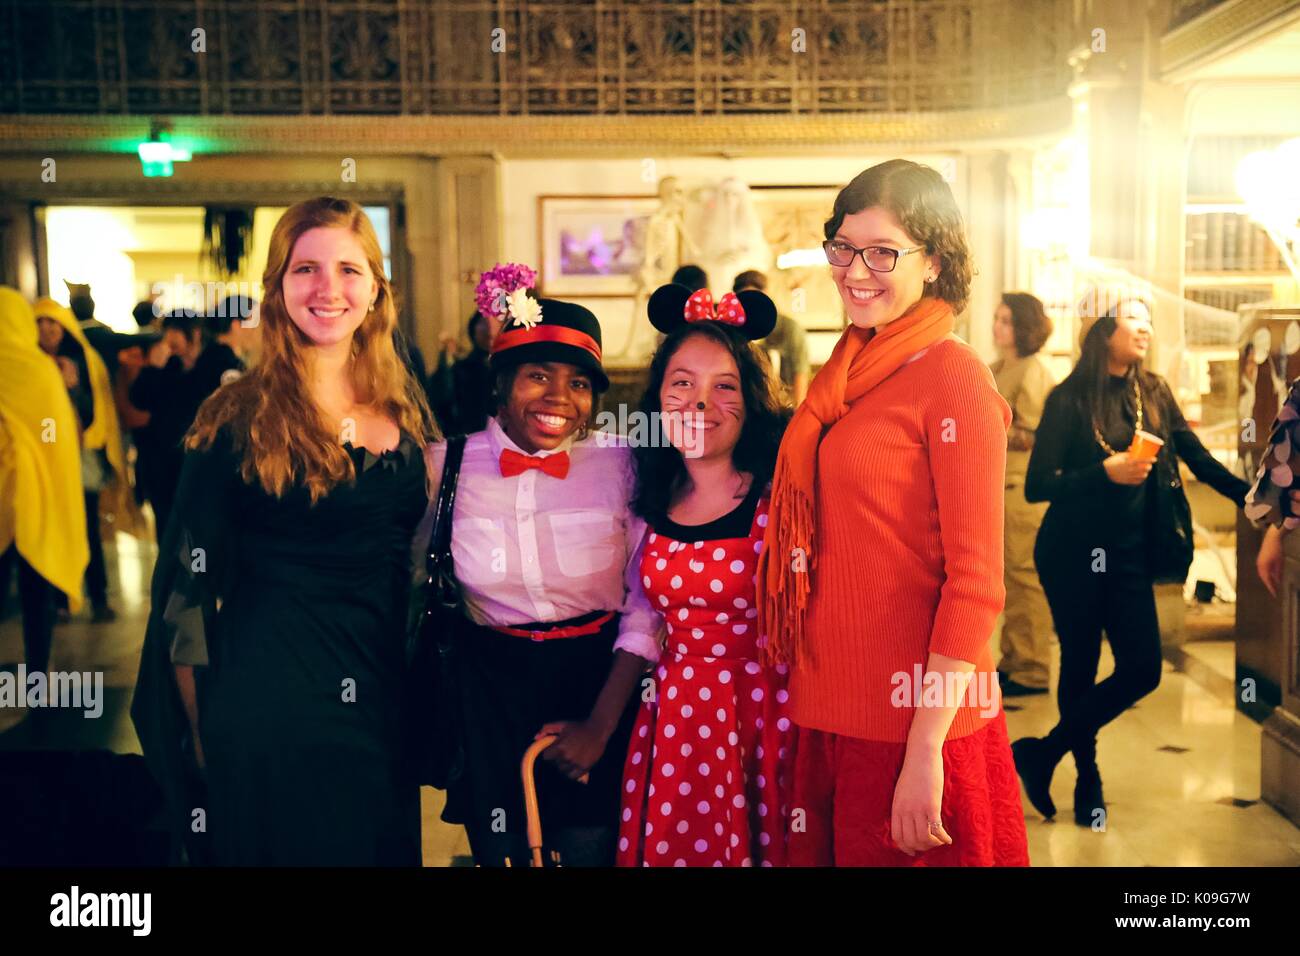 Vier weibliche Studenten stellen und lächelnd, das Mädchen auf der linken Seite trägt ein schwarzes Kleid, das nächste Mädchen gekleidet, wie Mary Poppins und hält einen Regenschirm, das Mädchen neben Ihren gekleidet ist wie Minnie Mouse und die Mädchen auf der rechten Seite wird als Wilma von Scooby Doo, 2015 bekleidet. Mit freundlicher Genehmigung von Eric Chen. Stockfoto